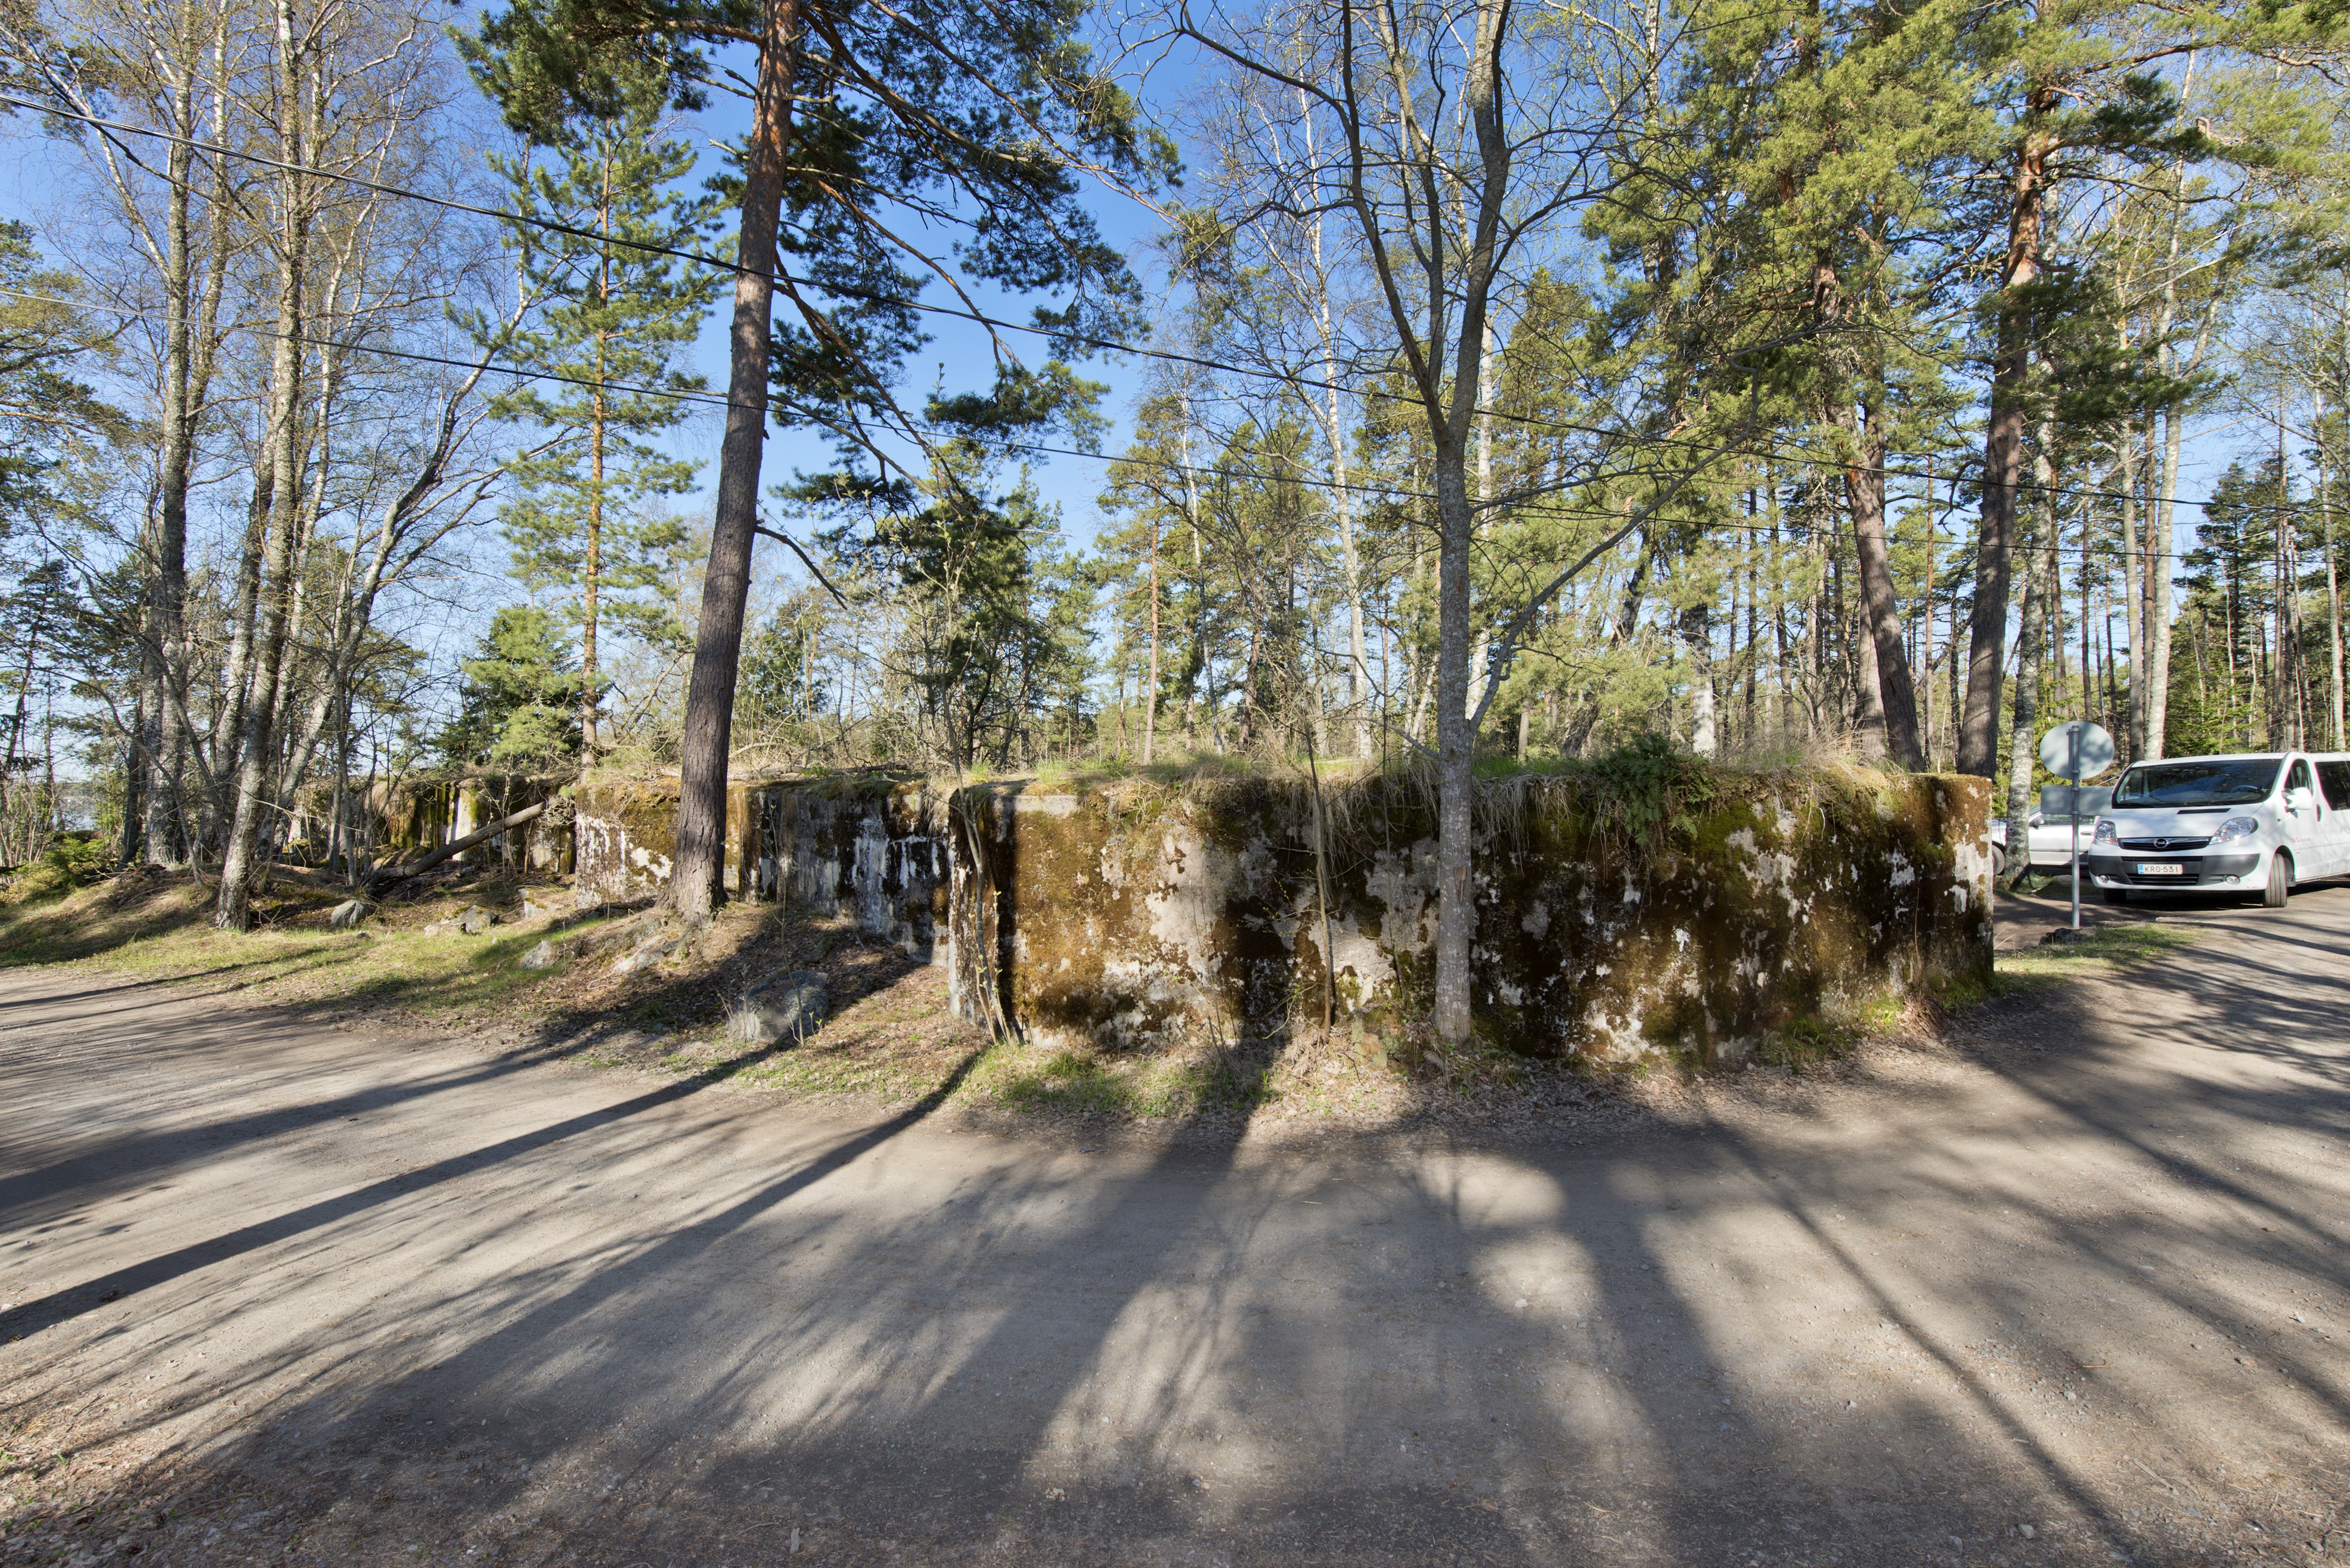 Skatanniemi. Ensimmäisen maailmansodan aikainen rannikkotykkipatteri Skatanniemessä, Vuosaaressa. Kuvassa on rintasuoja, jonka taakse on sijoitettu yhteensä neljä tykkiasemaa. Rintasuoja aaltoilee loivasti asemien kohdalta. Seinät ovat sammaleen peitossa. Kuvan etualalla kulkee tie, joka on puhkaistu aseman läpi 1920-luvulla. Taustalla oikealla näkyy autoja. Kuvaussuunta suurin piirtein länteen.